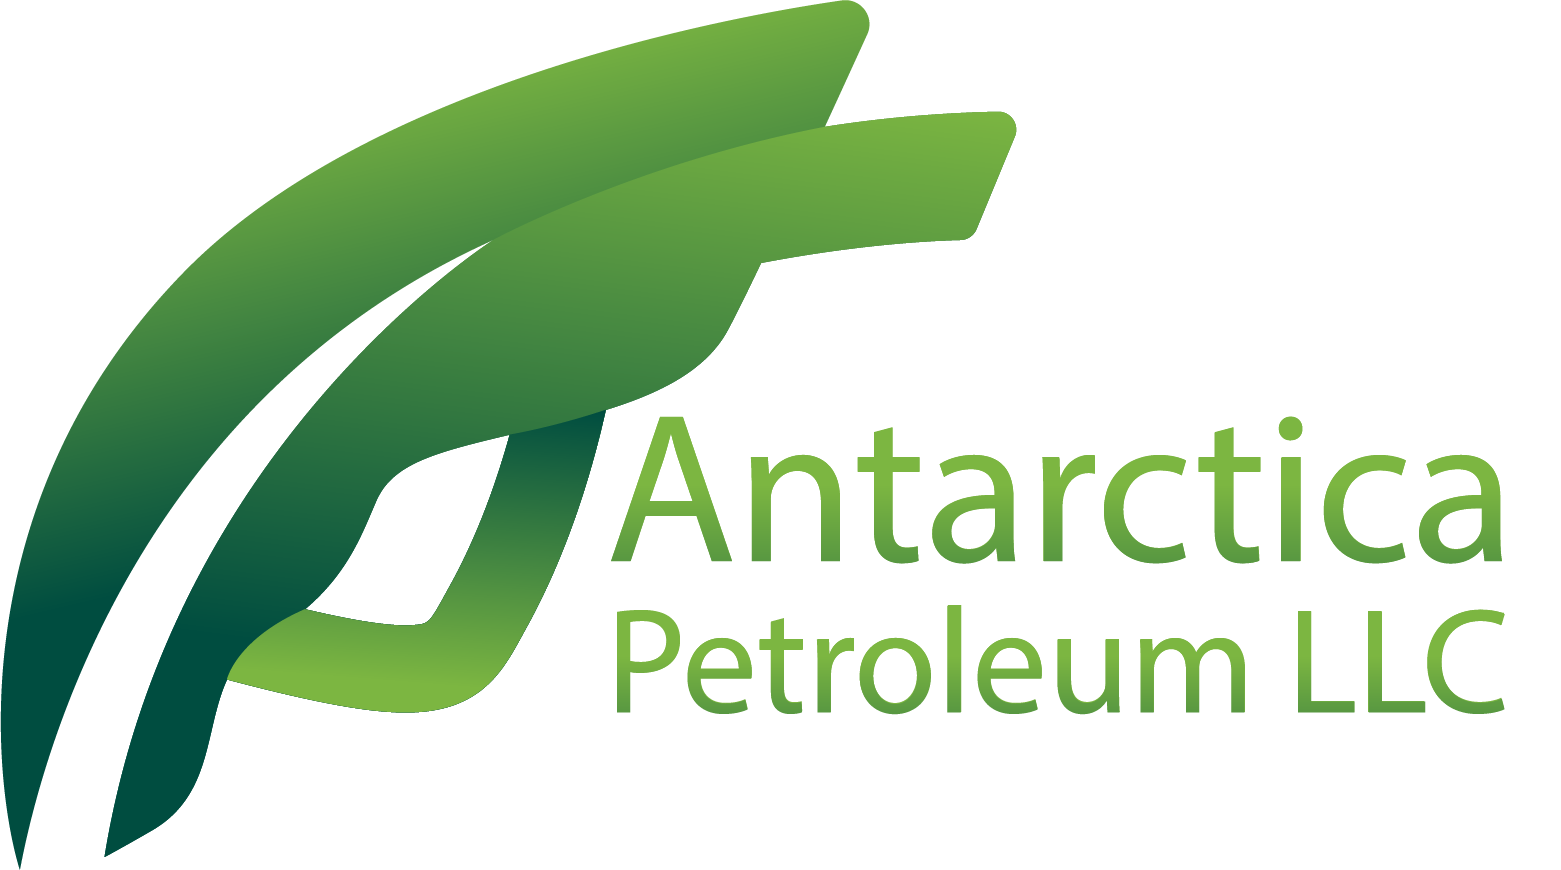 Antarctica Petroleum LLC